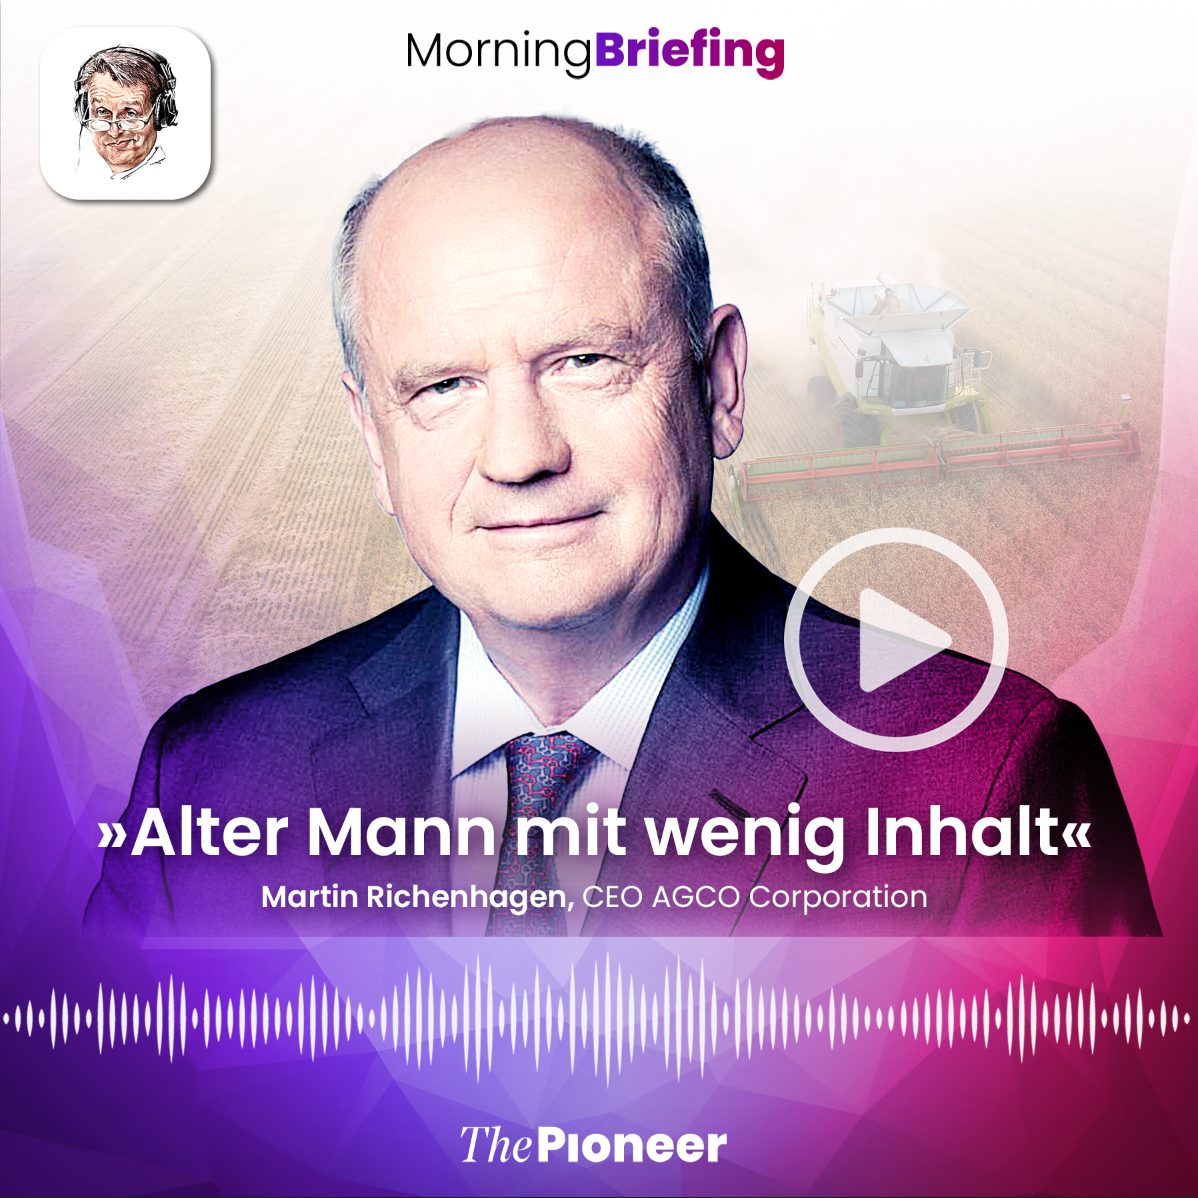 20201105-image-media pioneer-morning briefing-Kachel Riechenhagen